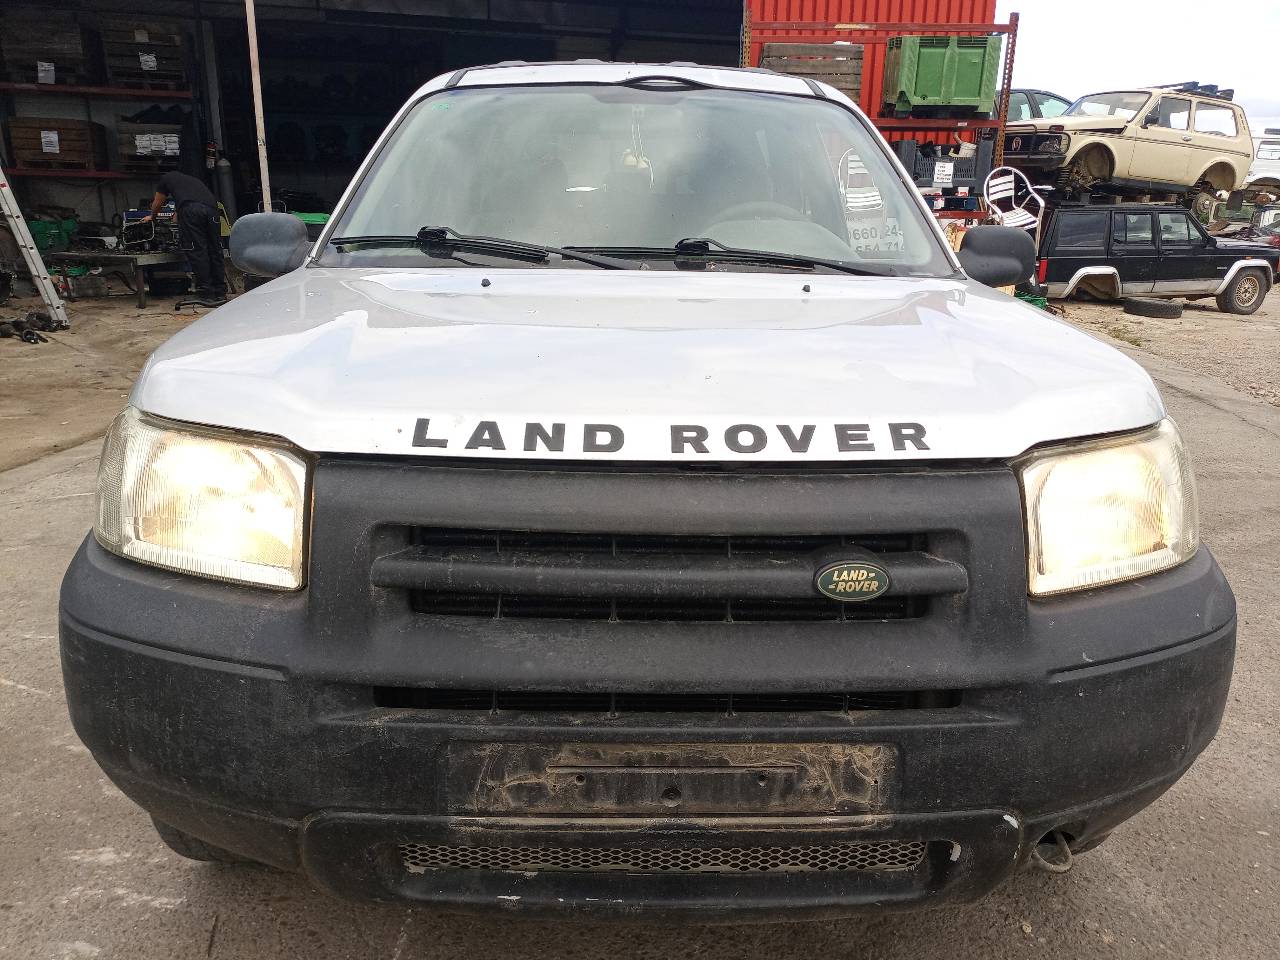 LAND ROVER Freelander 1 generation (1998-2006) Ремень безопасности передний правый 24690242